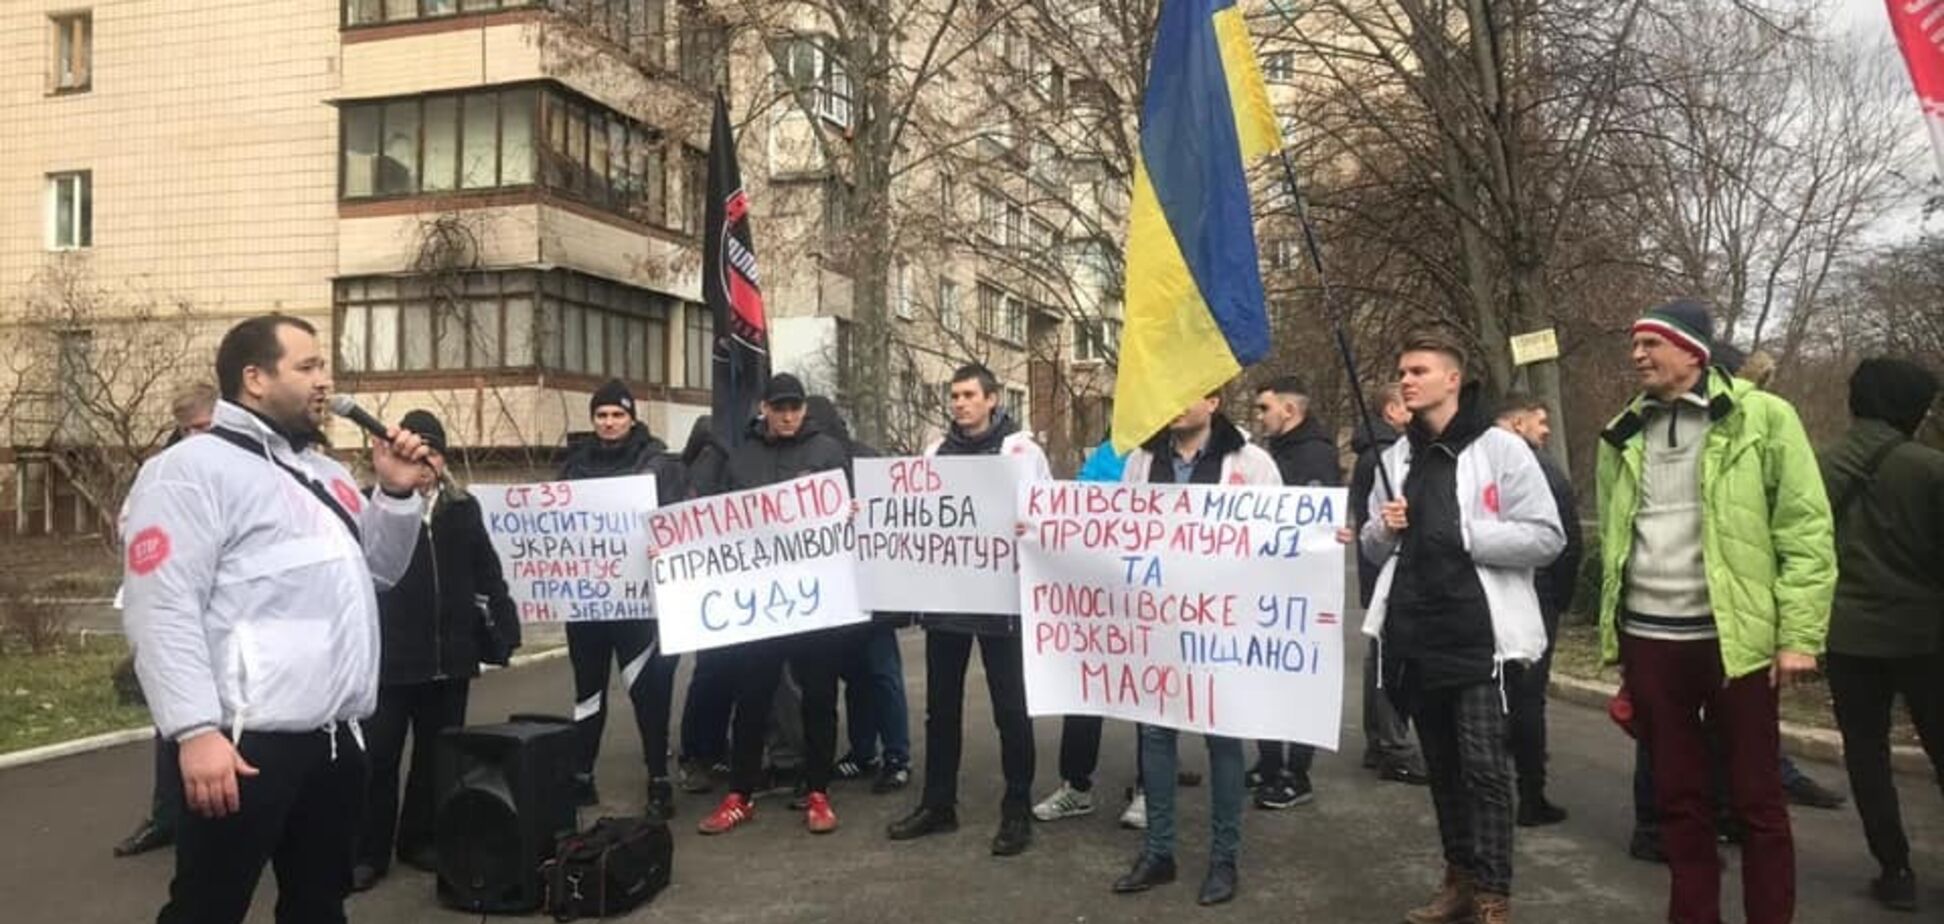 'Шьют' дела за борьбу с песчаной мафией!' В Киеве прошел митинг против произвола прокуроров